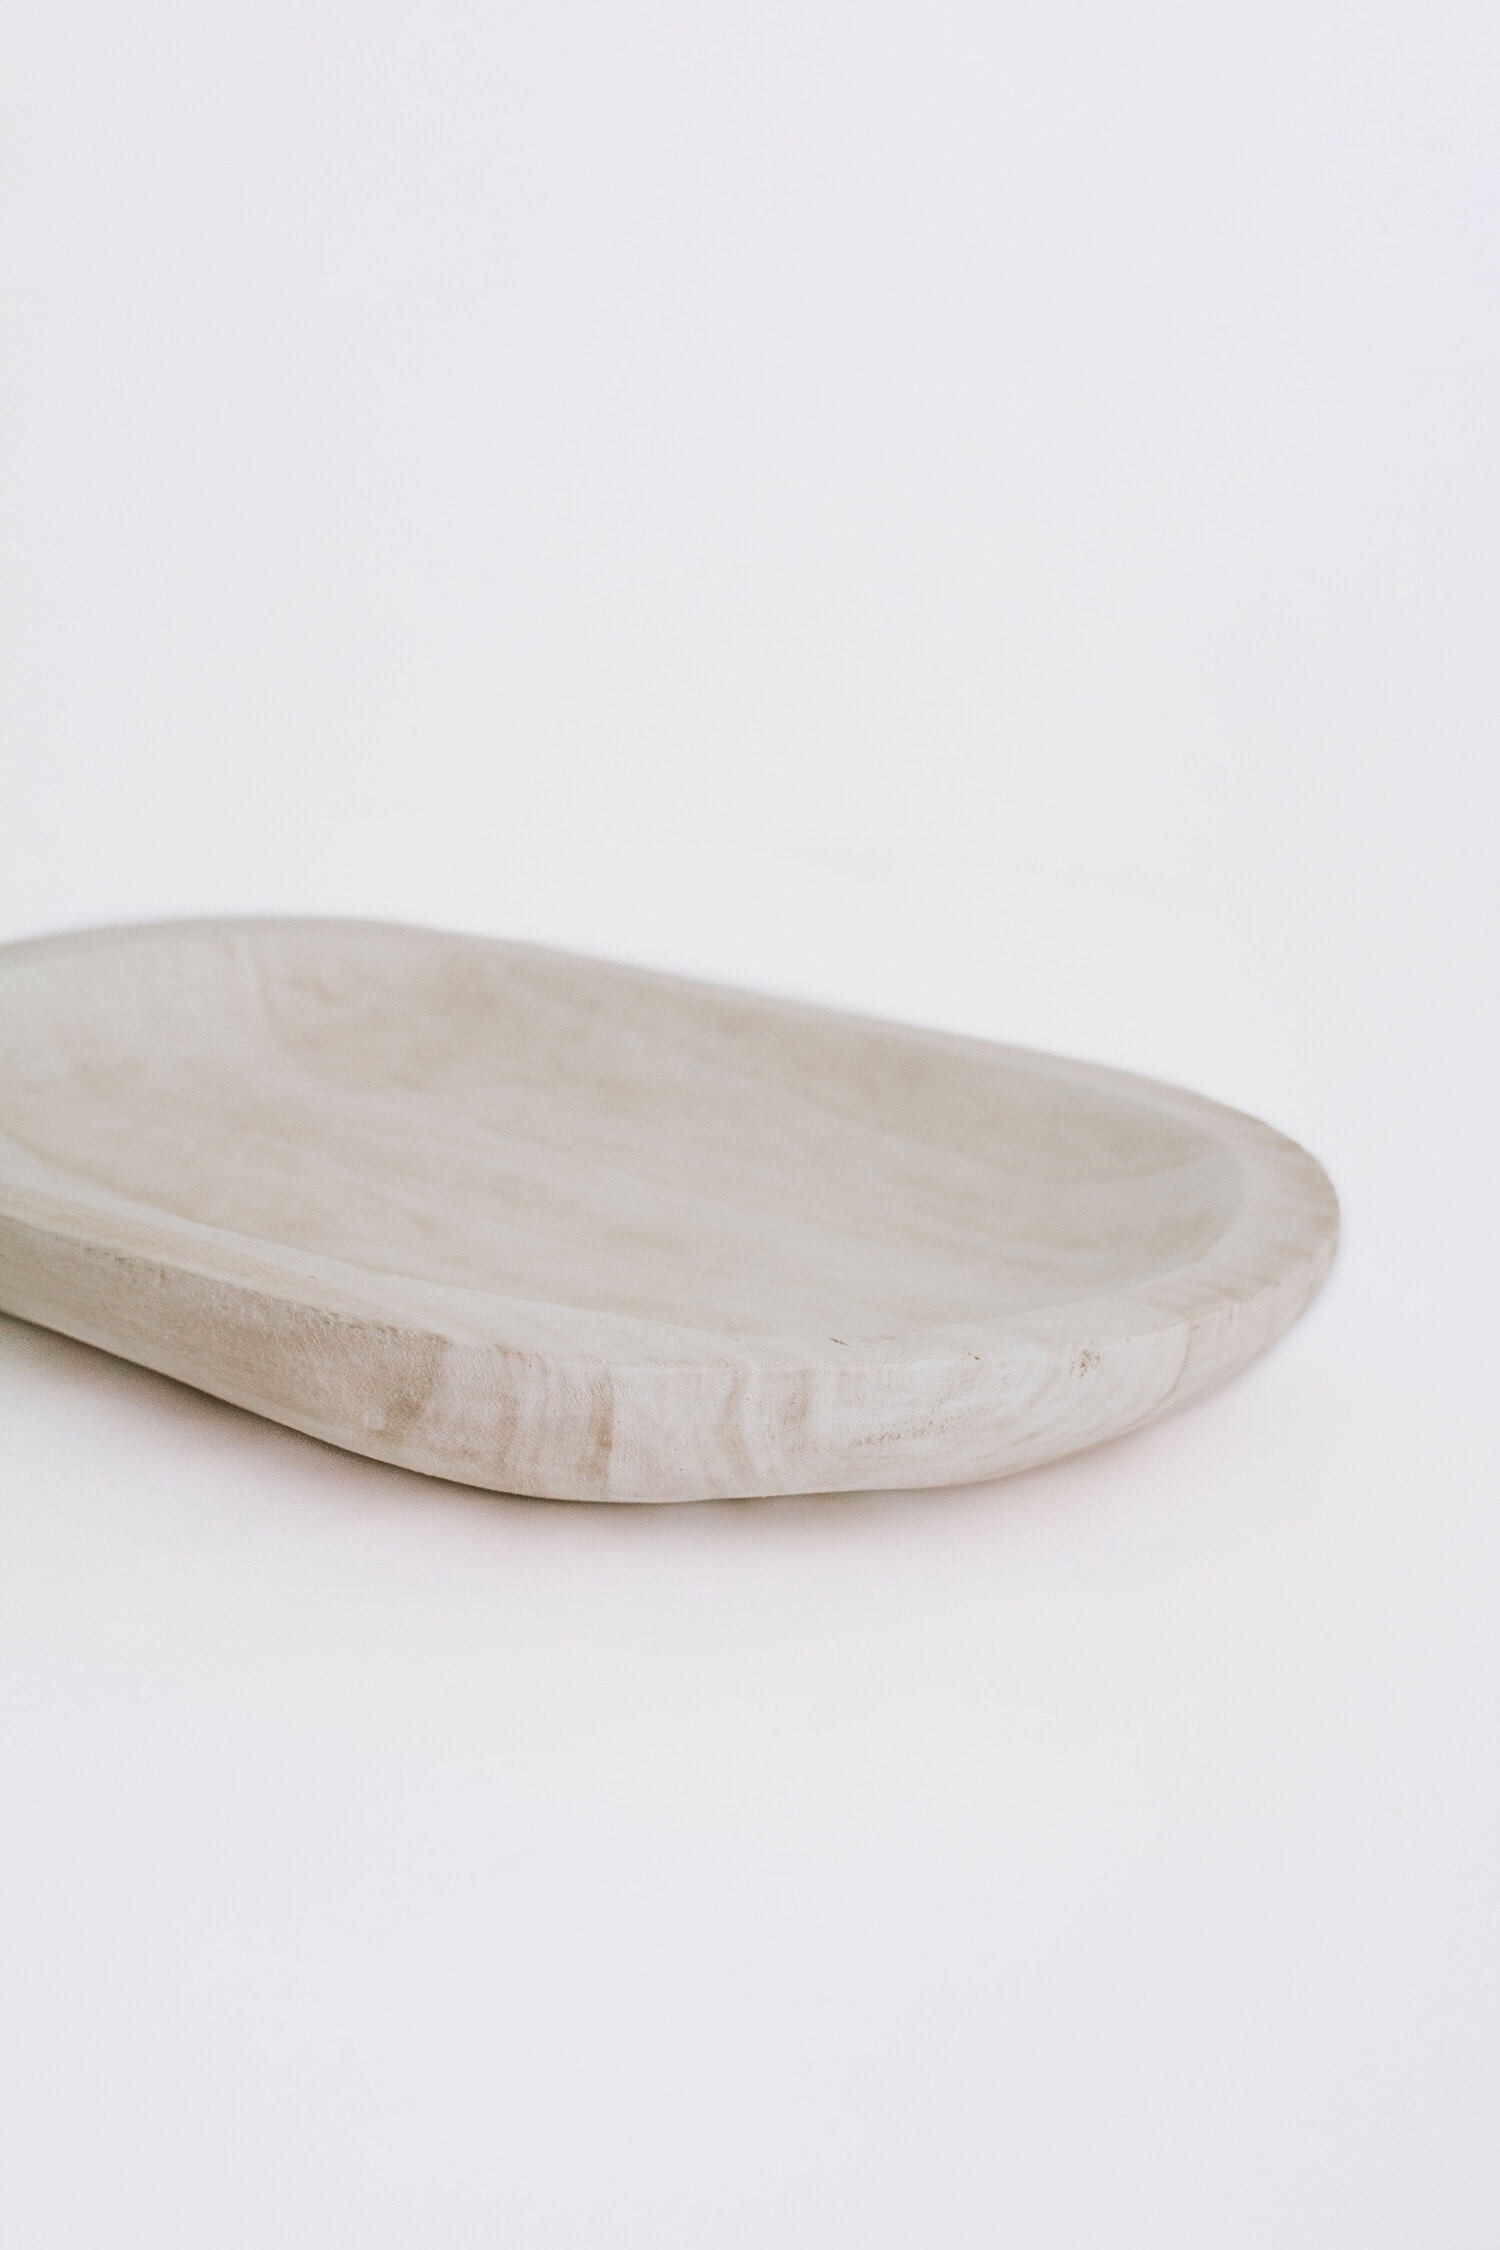 Hand-Carved Paulownia Wood Bowl with Whitewashed Finish - Image 3